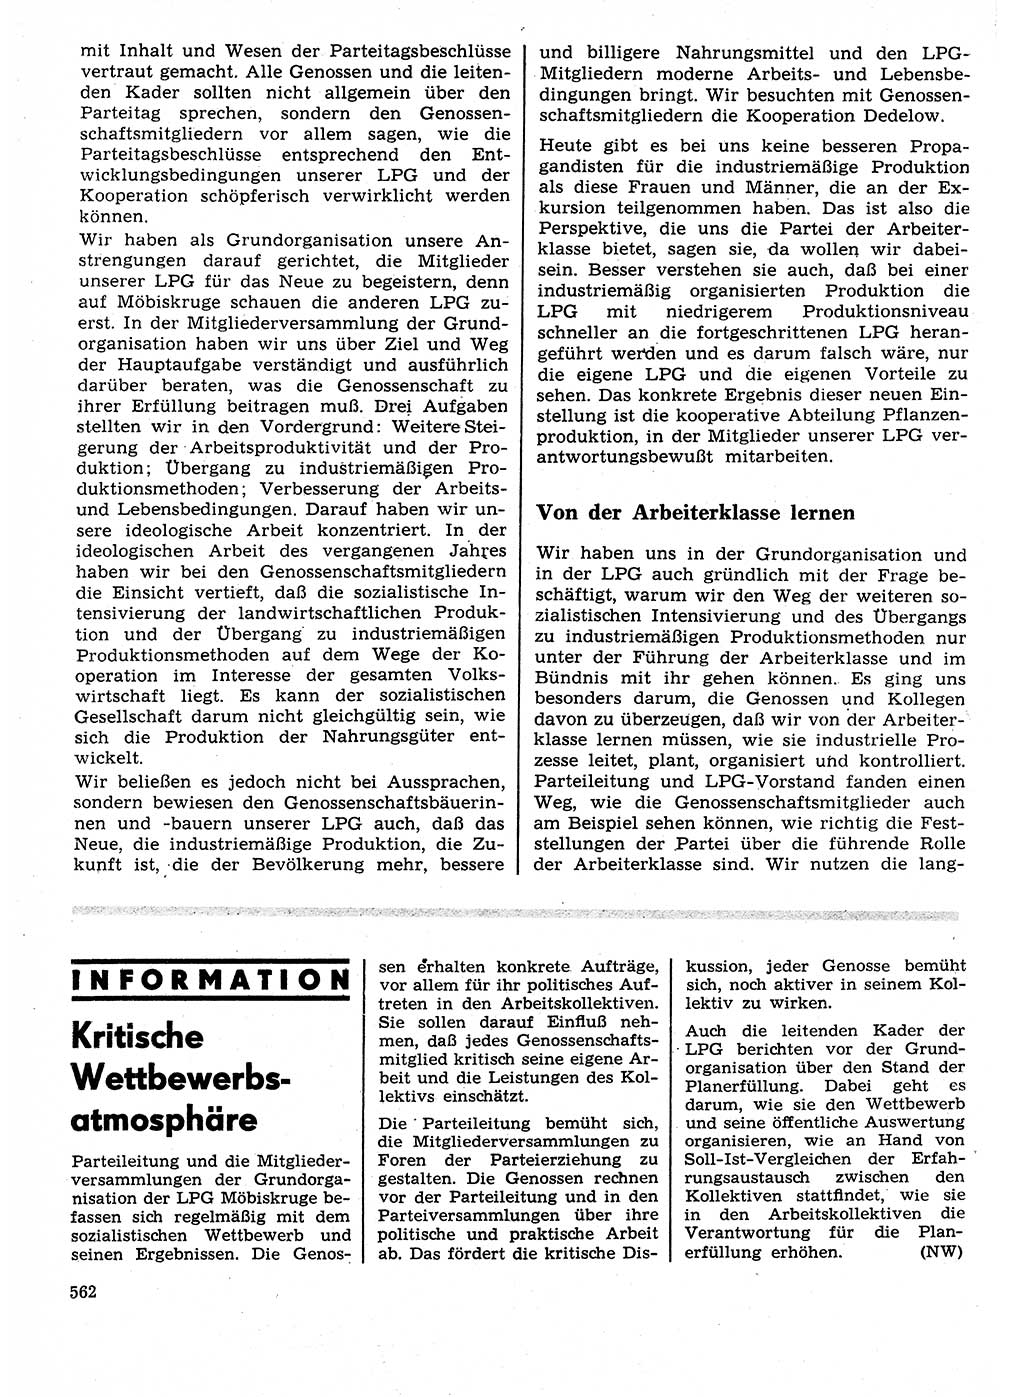 Neuer Weg (NW), Organ des Zentralkomitees (ZK) der SED (Sozialistische Einheitspartei Deutschlands) für Fragen des Parteilebens, 27. Jahrgang [Deutsche Demokratische Republik (DDR)] 1972, Seite 562 (NW ZK SED DDR 1972, S. 562)